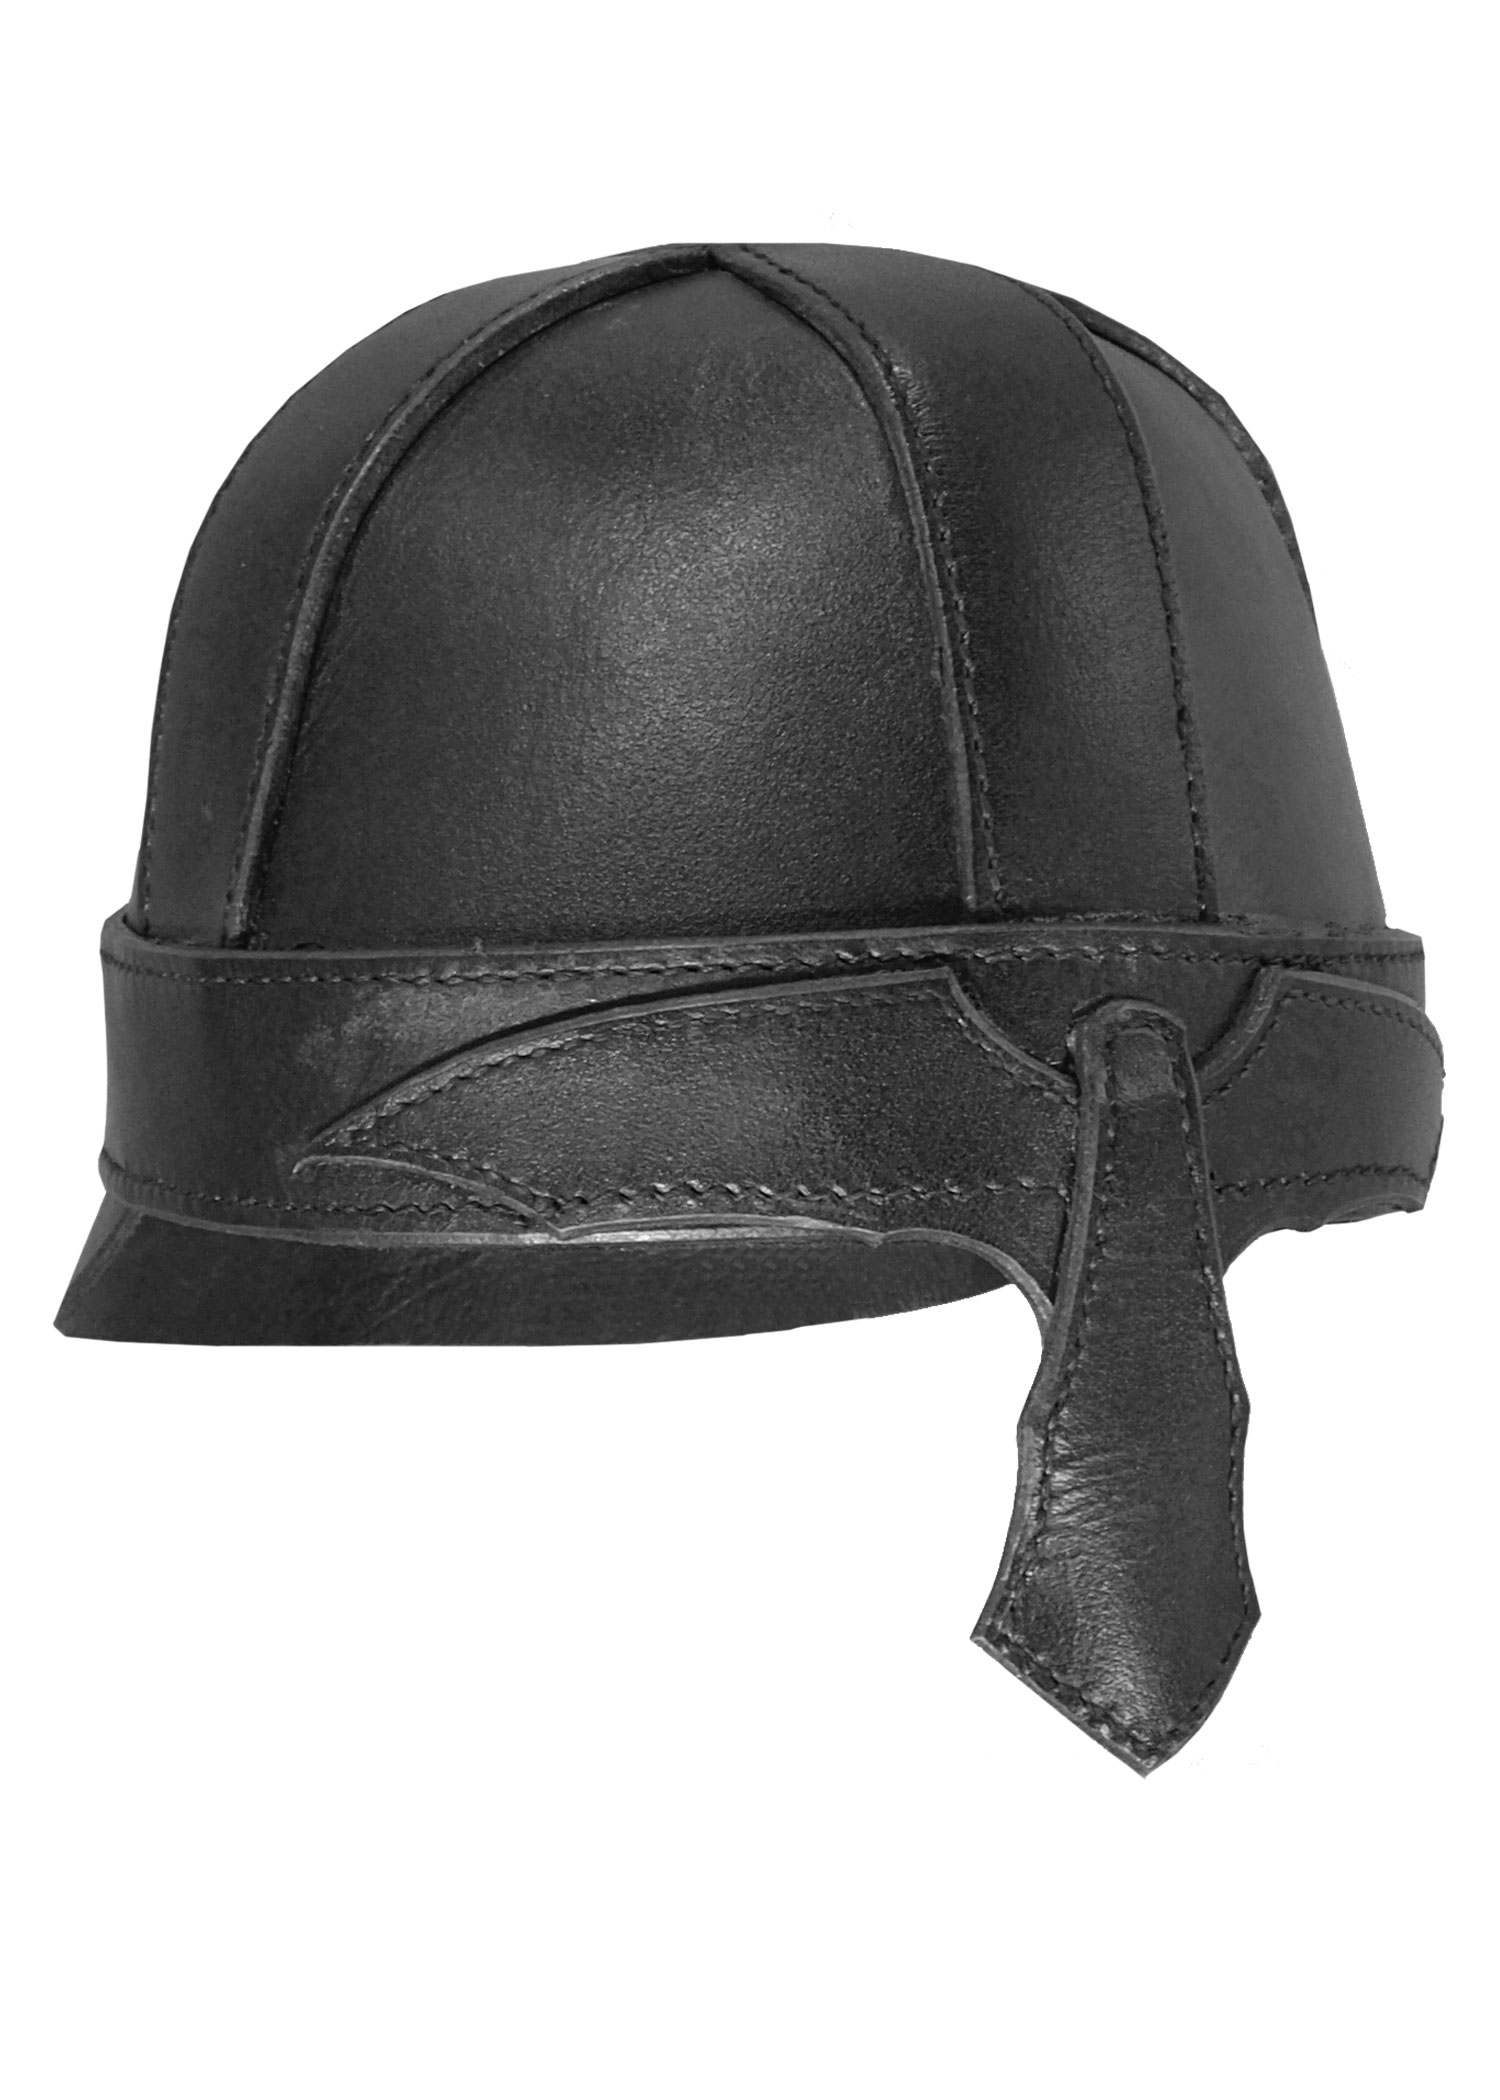 Helm Warrior aus Leder, schwarz, Größe M